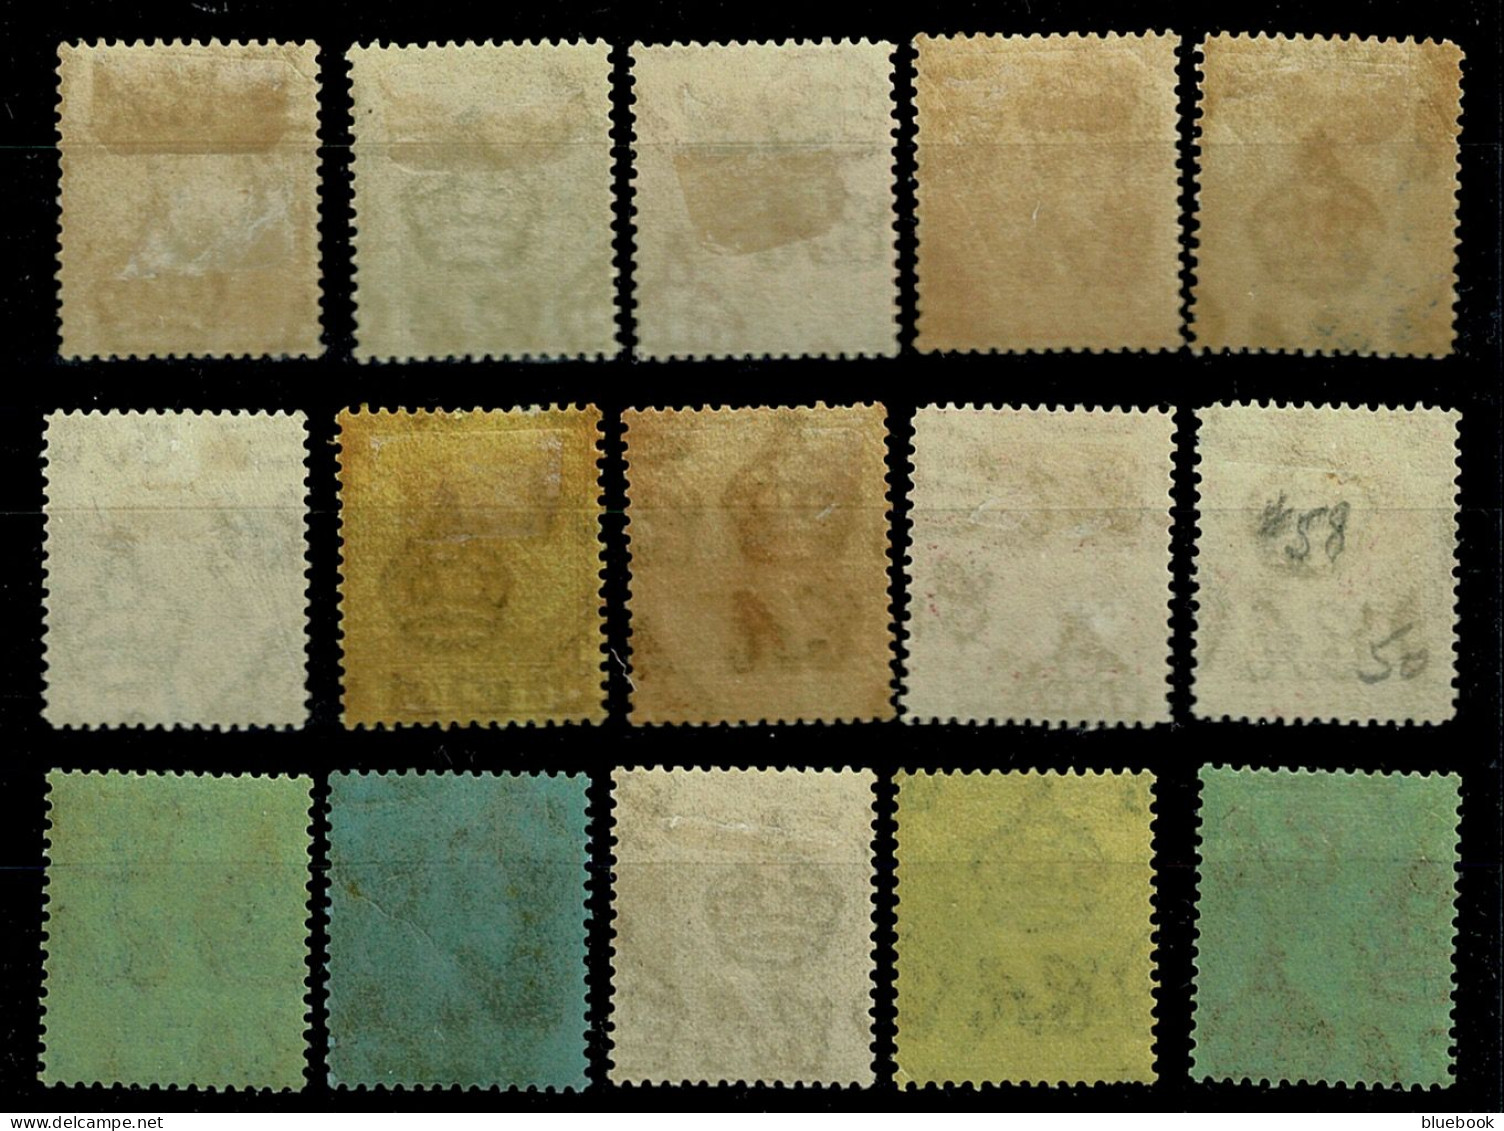 Ref 1649 - KGV Cayman Islands 1921-1926 - 15 Mint Stamps SG 69-83 - Iles Caïmans